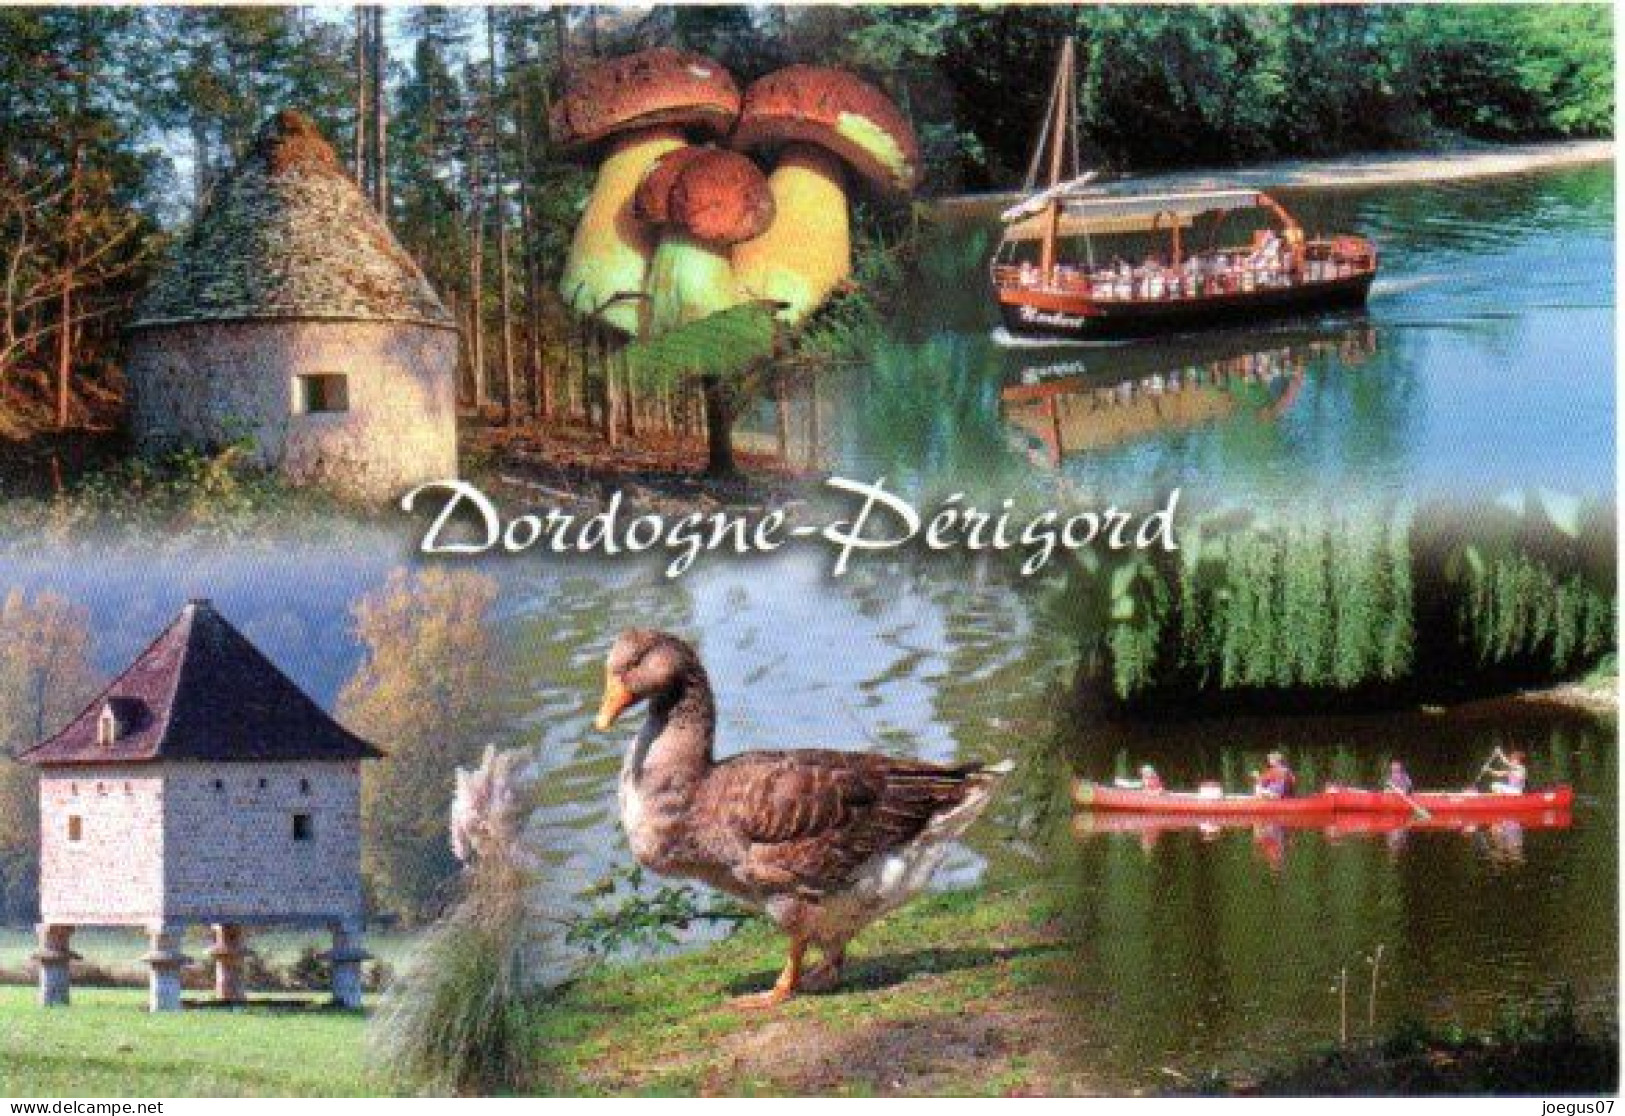 Dordogne-Périgord - Champignon, Cèpes. Borie. Pigeonnier. Gabarre Et Canoë Kayak. Oie - Editions MARCOU N° 24996 - Champignons